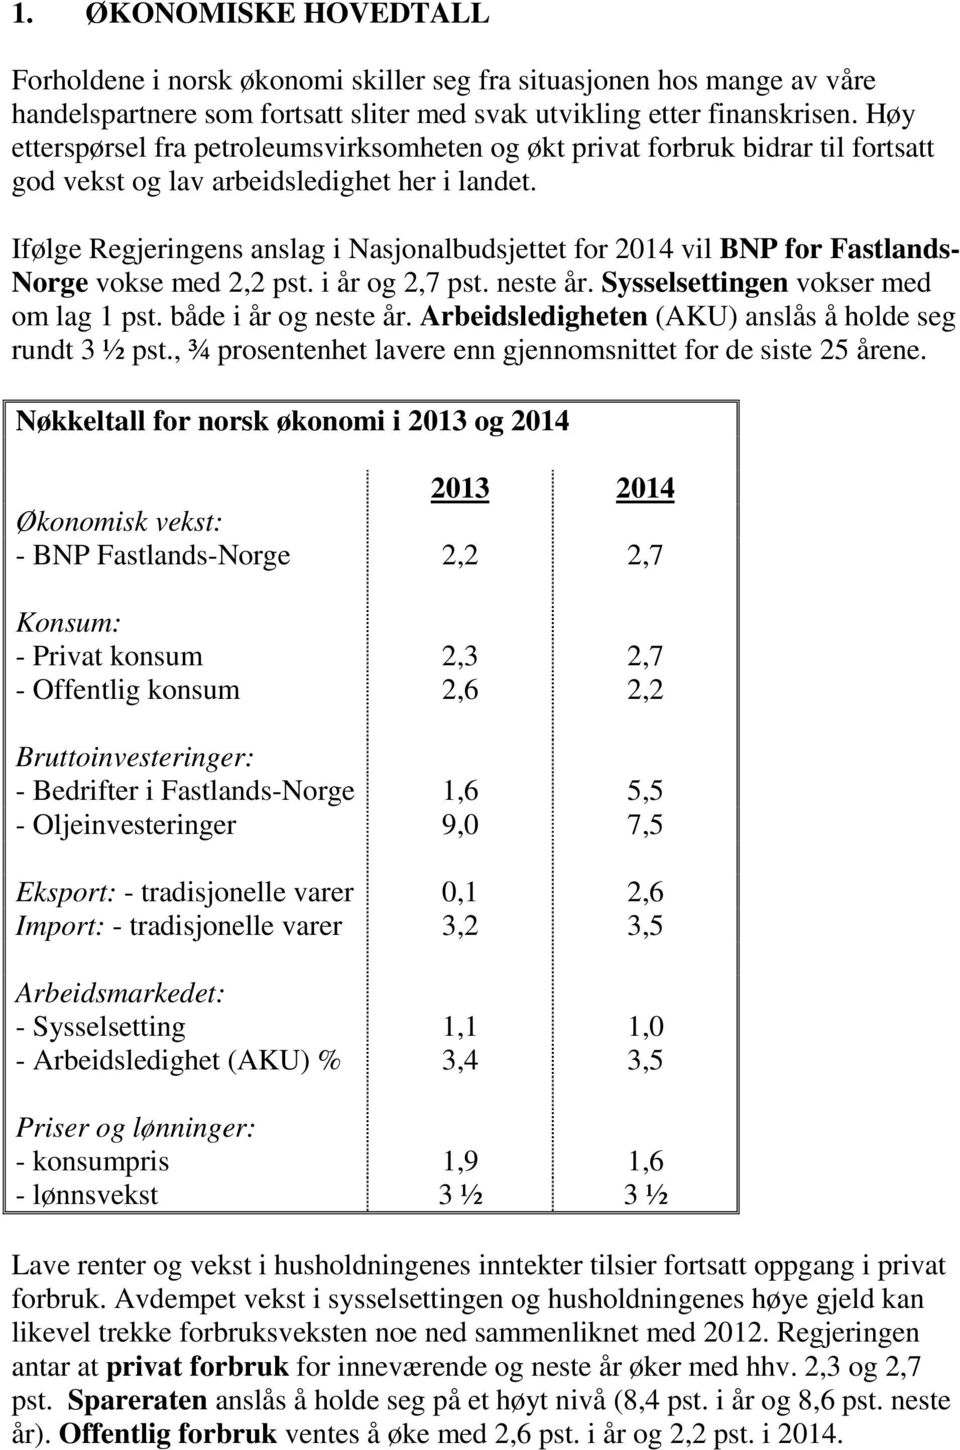 Ifølge Regjeringens anslag i Nasjonalbudsjettet for 2014 vil BNP for Fastlands- Norge vokse med 2,2 pst. i år og 2,7 pst. neste år. Sysselsettingen vokser med om lag 1 pst. både i år og neste år.